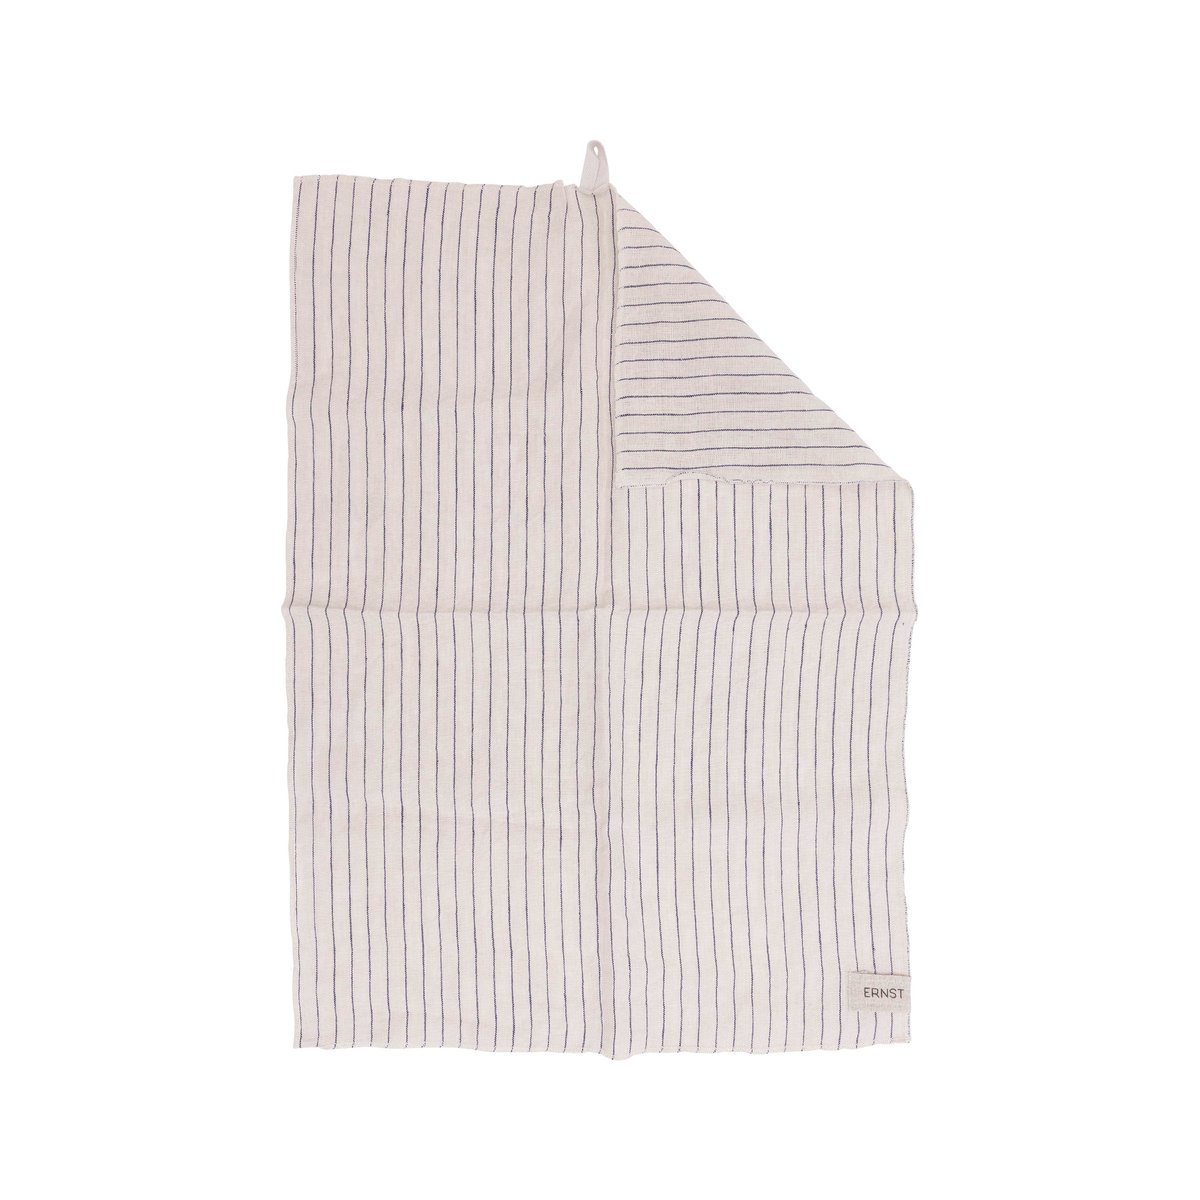 ERNST Ernst kjøkkenhåndkle stripete 50 x 70 cm Blå-beige